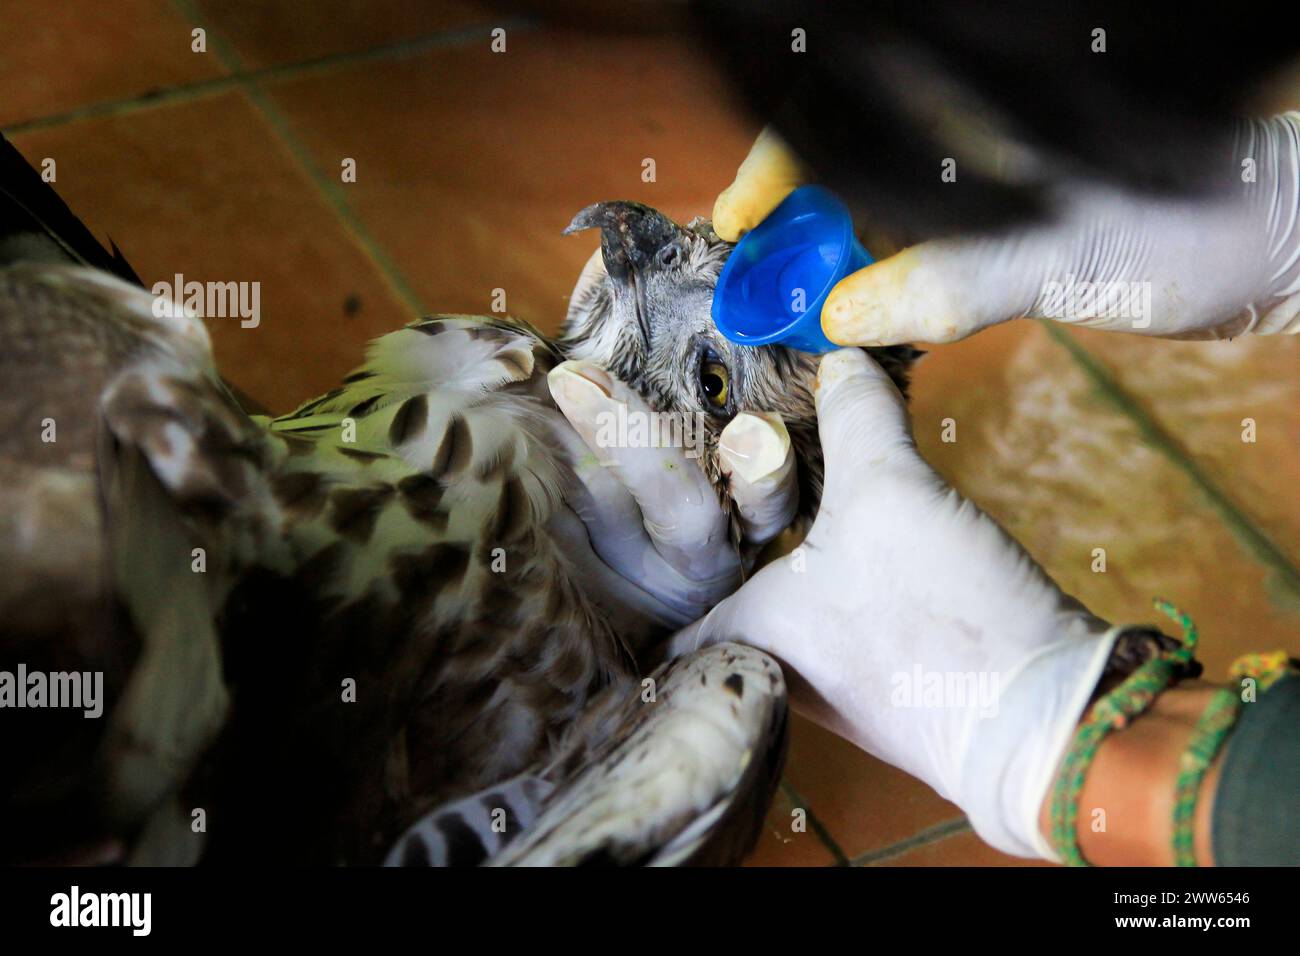 ELANG Brontok ou Hawk Eagle (Spizaetus cirrhatus) lors d'un traitement oculaire au Wildlife Rescue Center. Banque D'Images